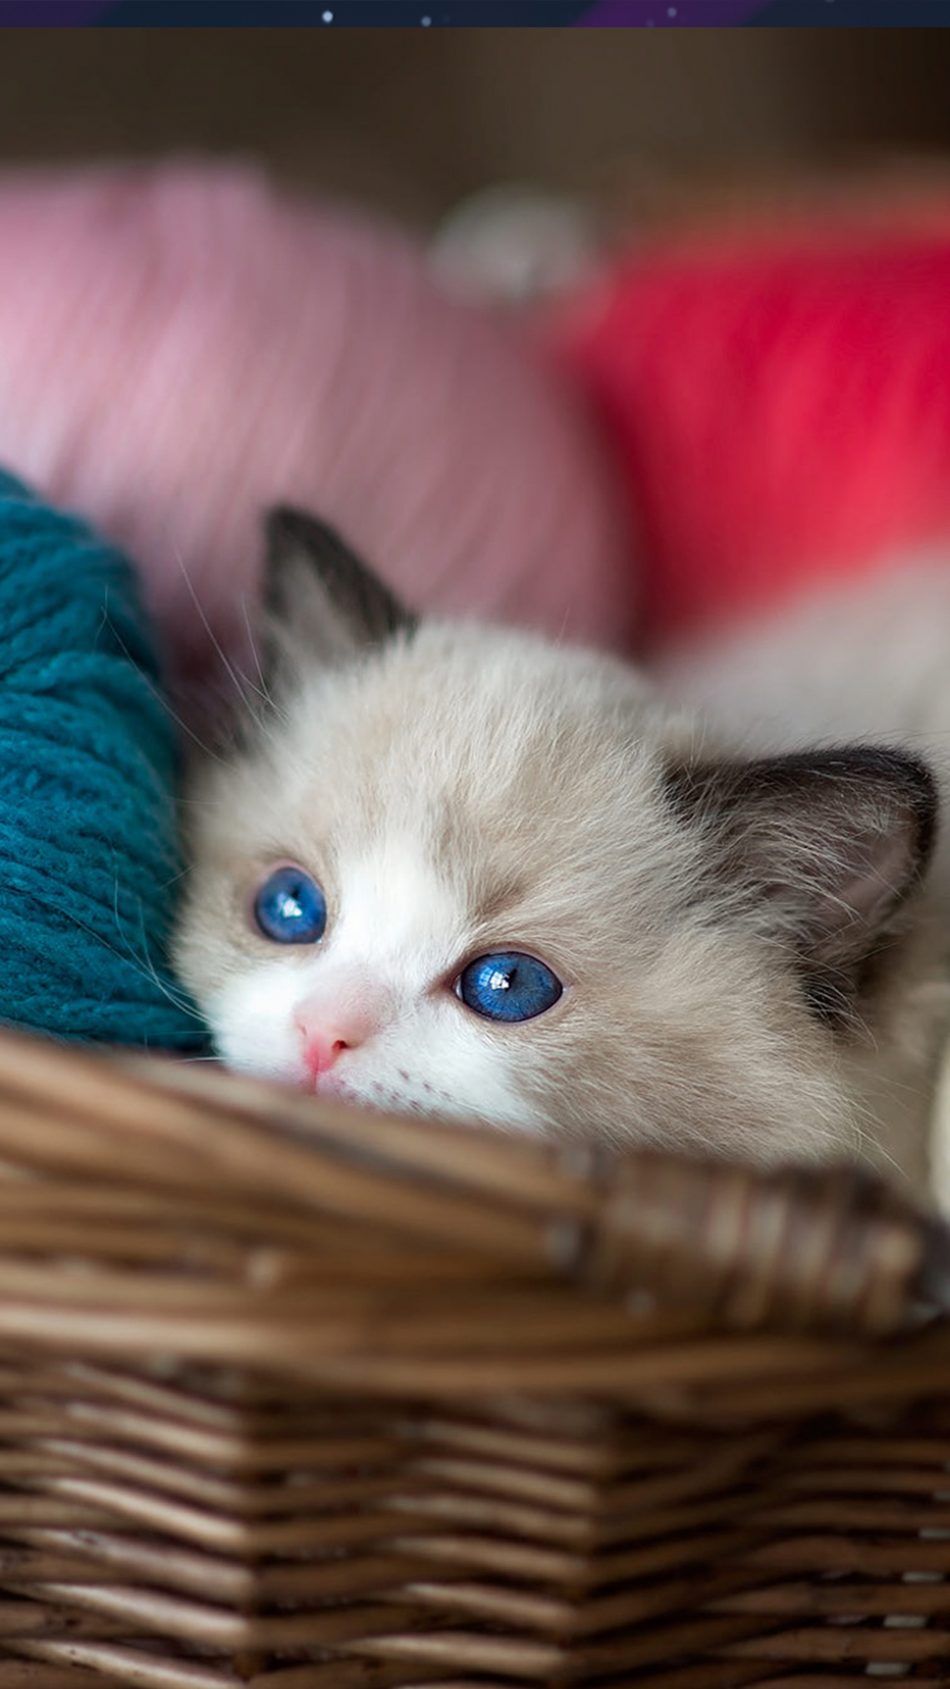 Kitten Blue Eyes Wool Balls 4k Ultra HD Mobile Wallpaper Baby